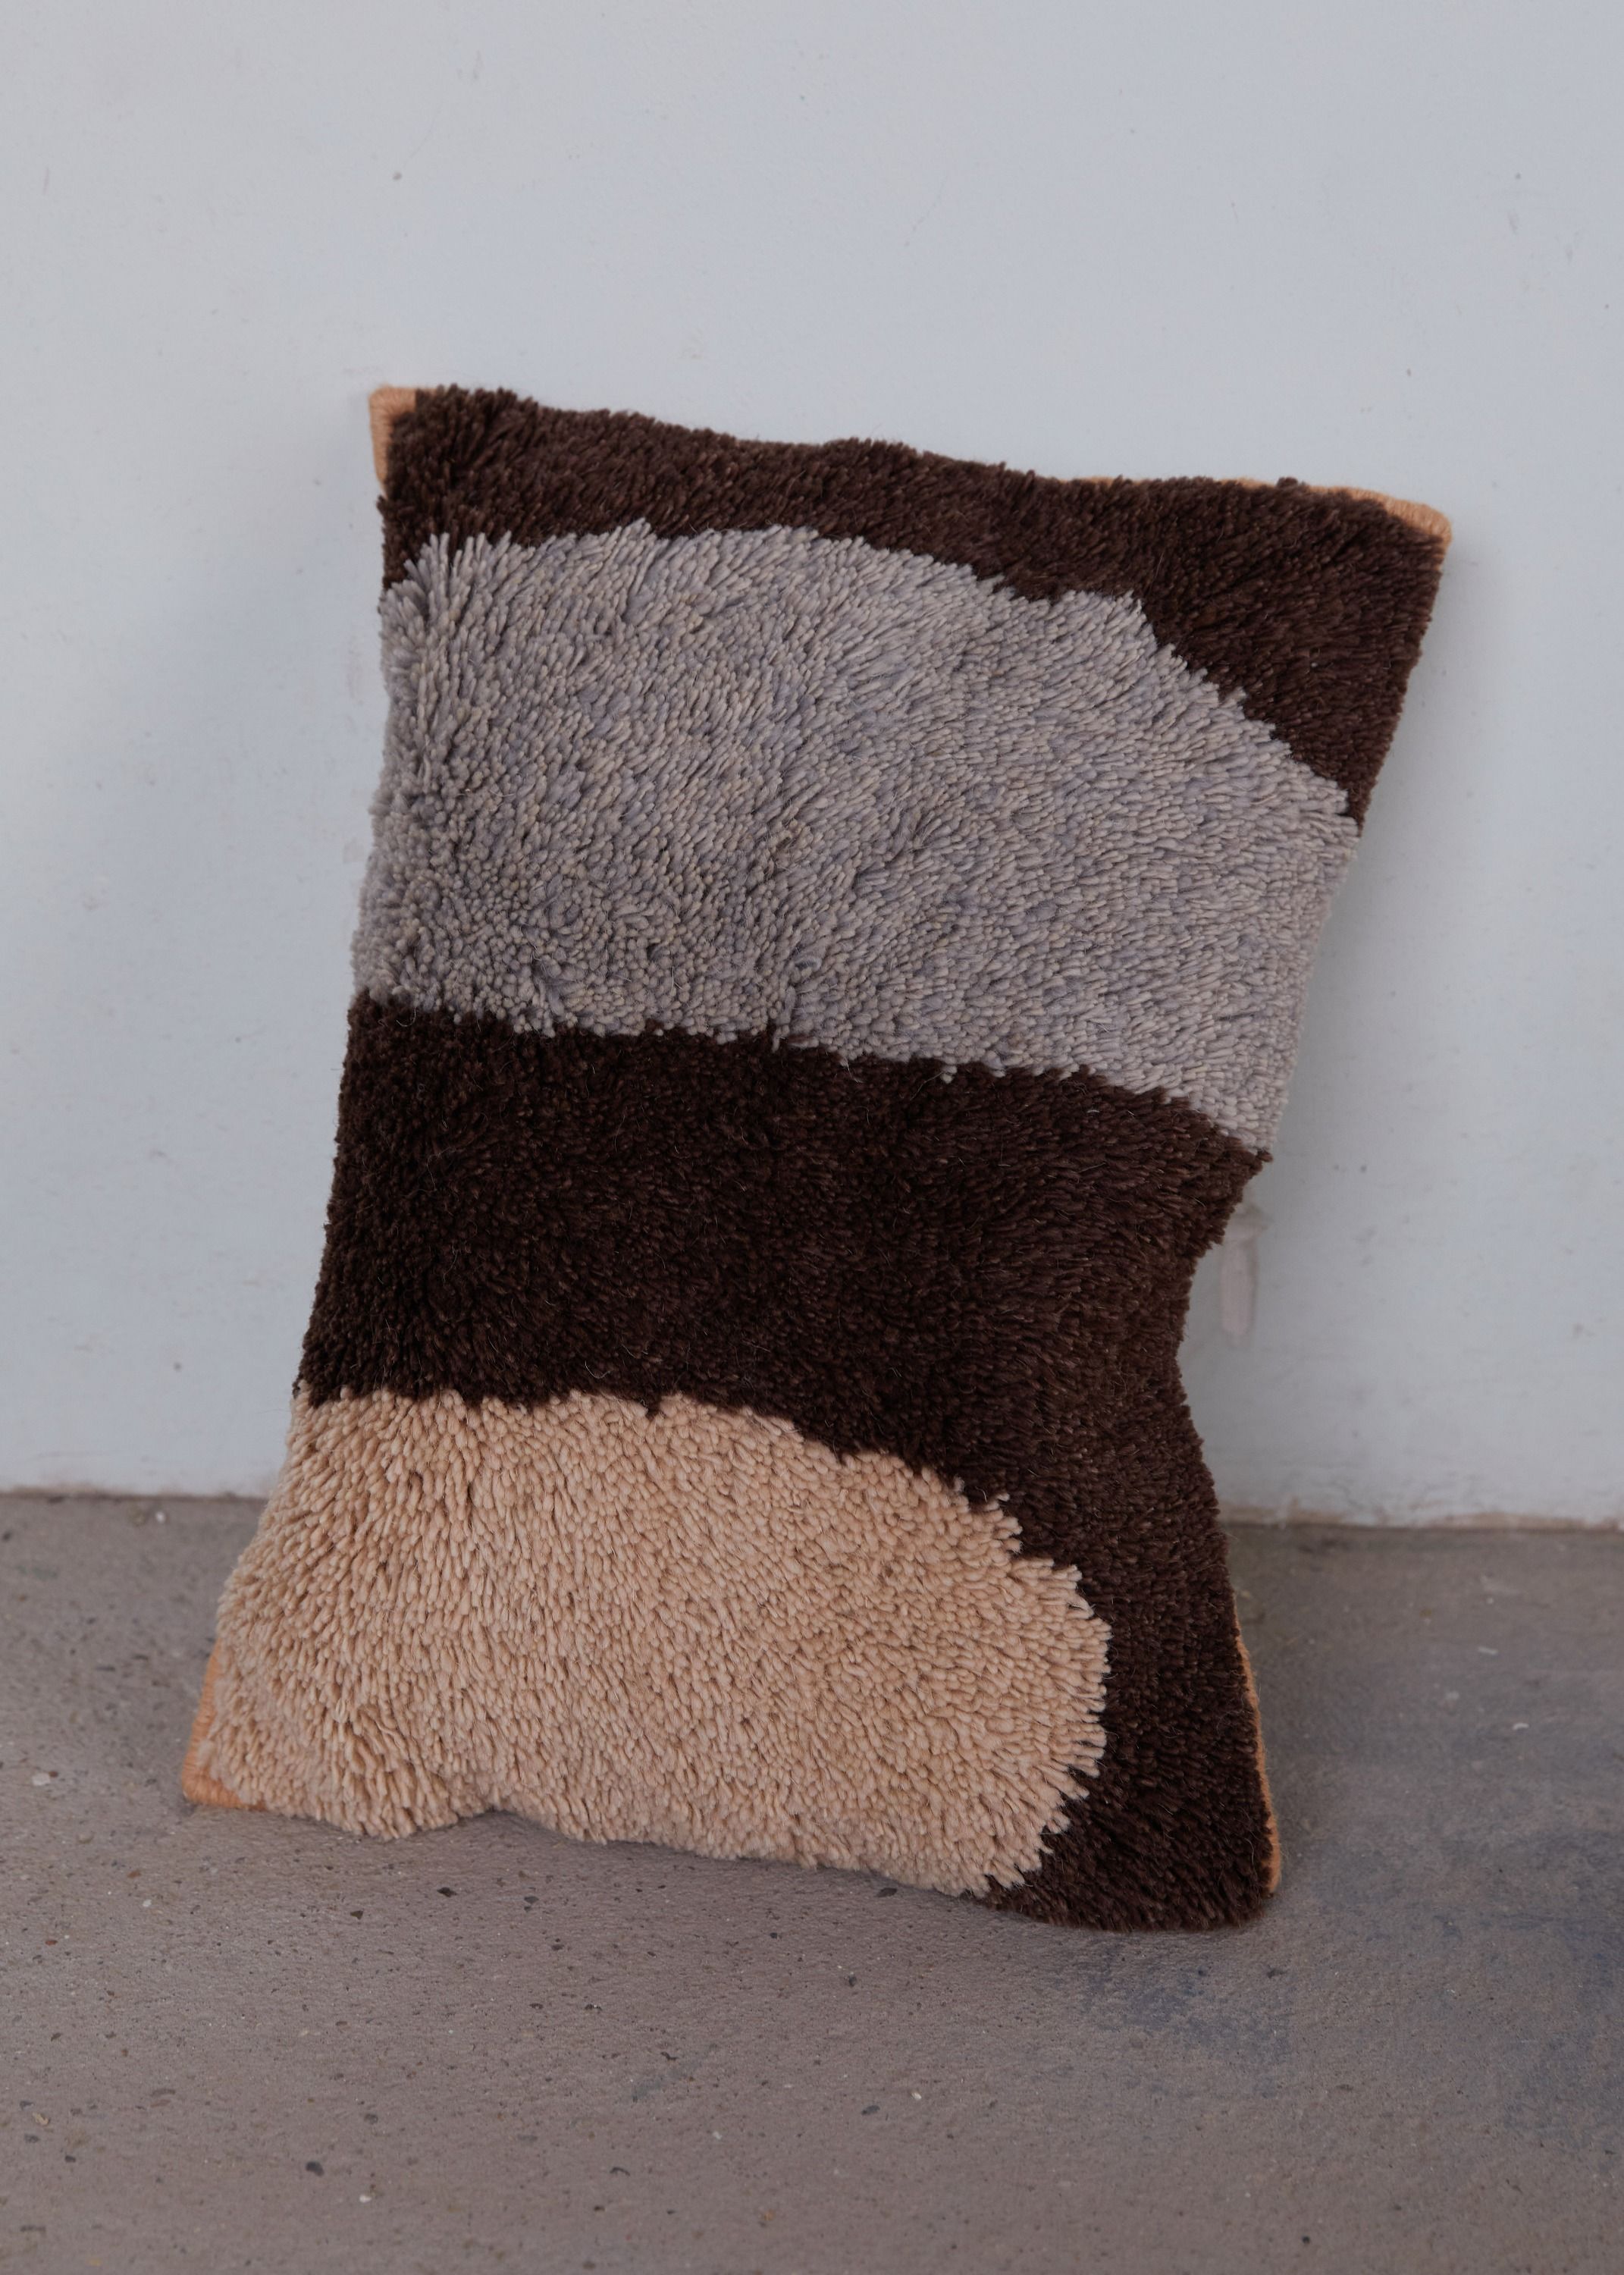 Cushions - Abstrakt Cushion